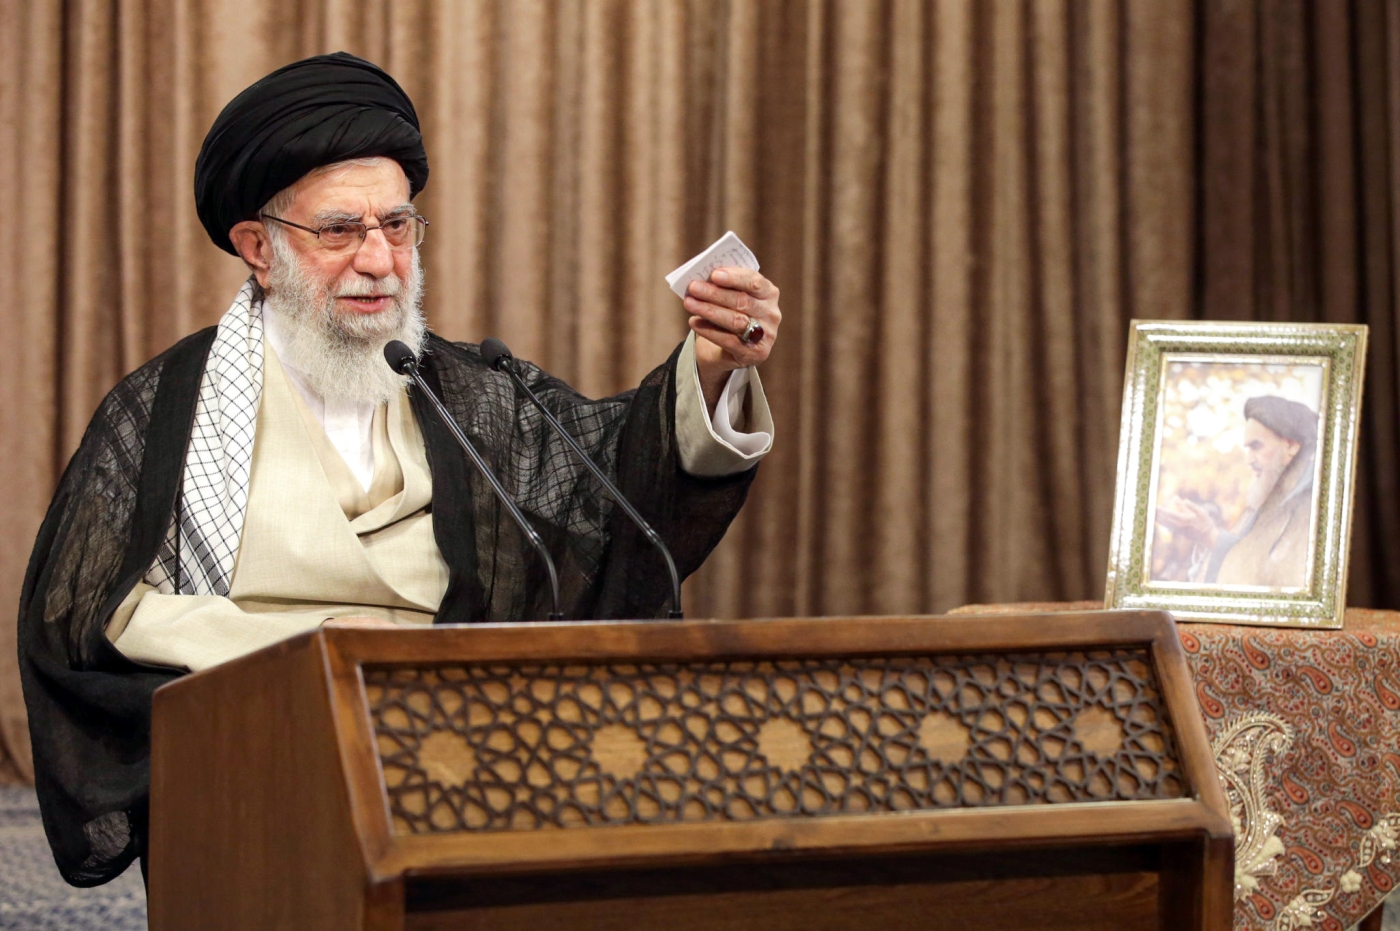 Le guide suprême iranien Ali Khamenei a ordonné en personne à ses alliés irakiens de cesser leurs attaques (AFP)